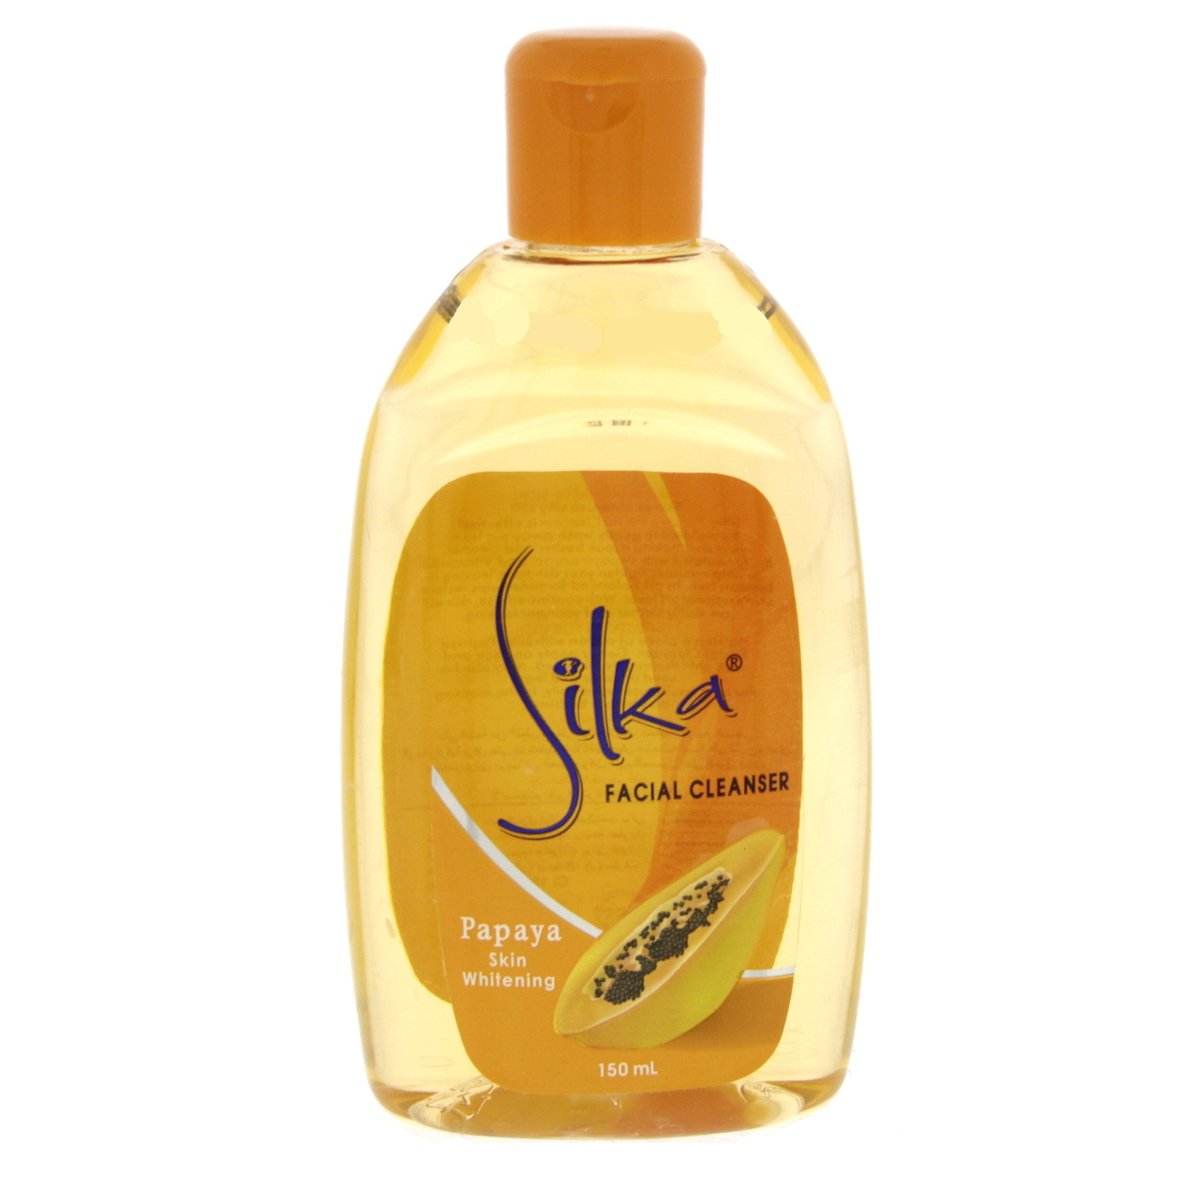 Silka Papaya Skin Whitening Facial Cleanser, 150 ml